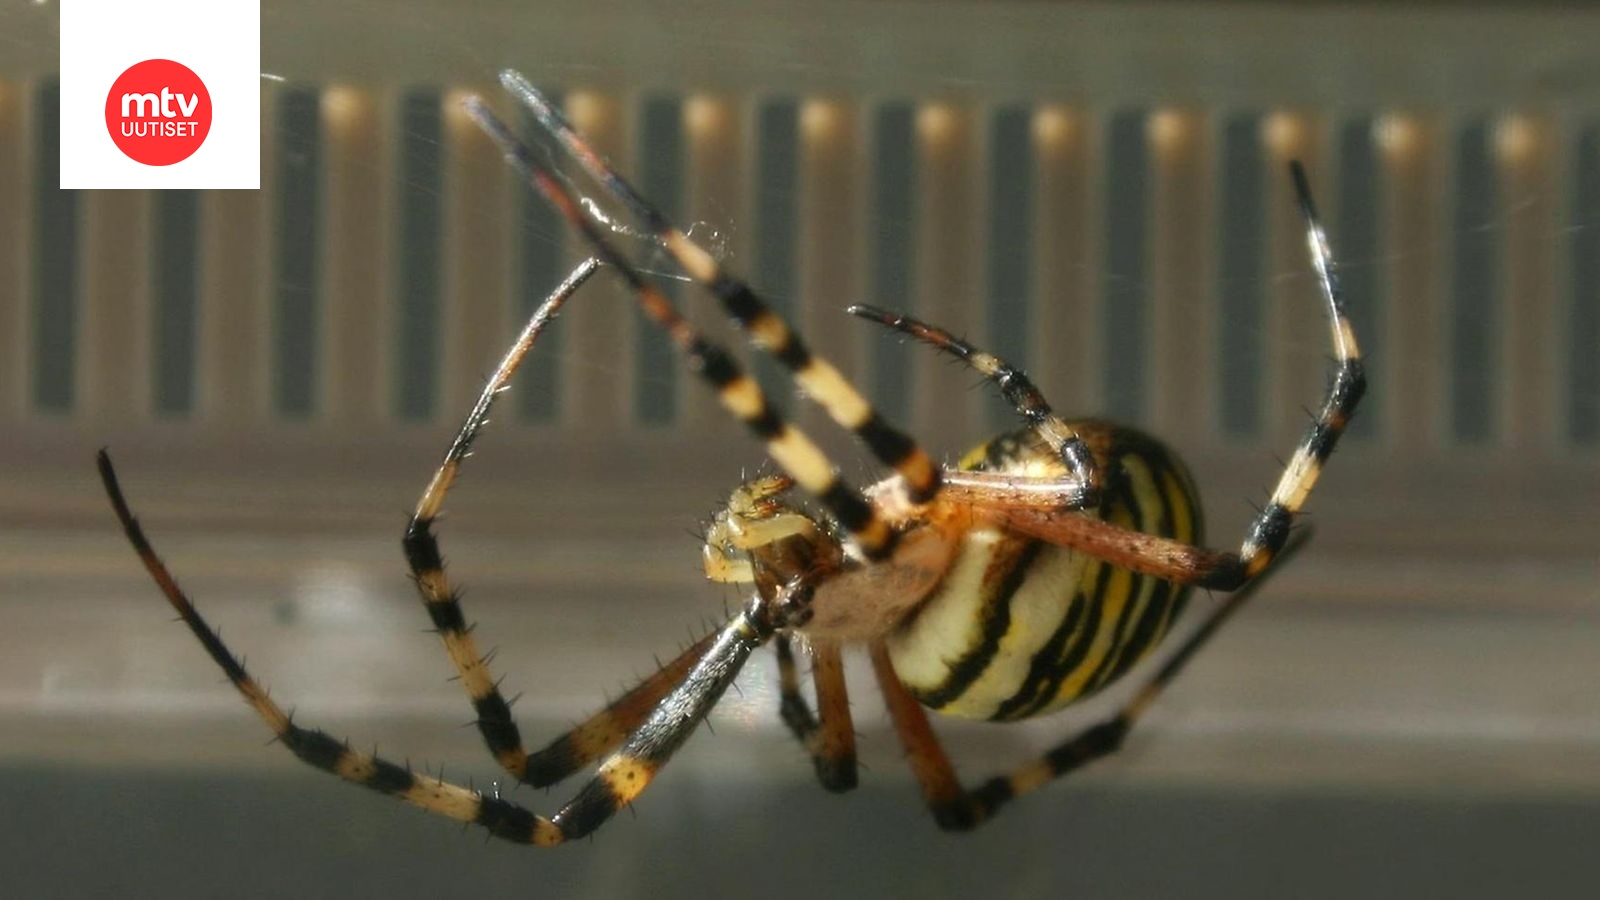 Ötökkäkammo voi häiritä lomaa, mutta hyönteiset ja hämähäkit ansaitsevat  myös ihailua: 